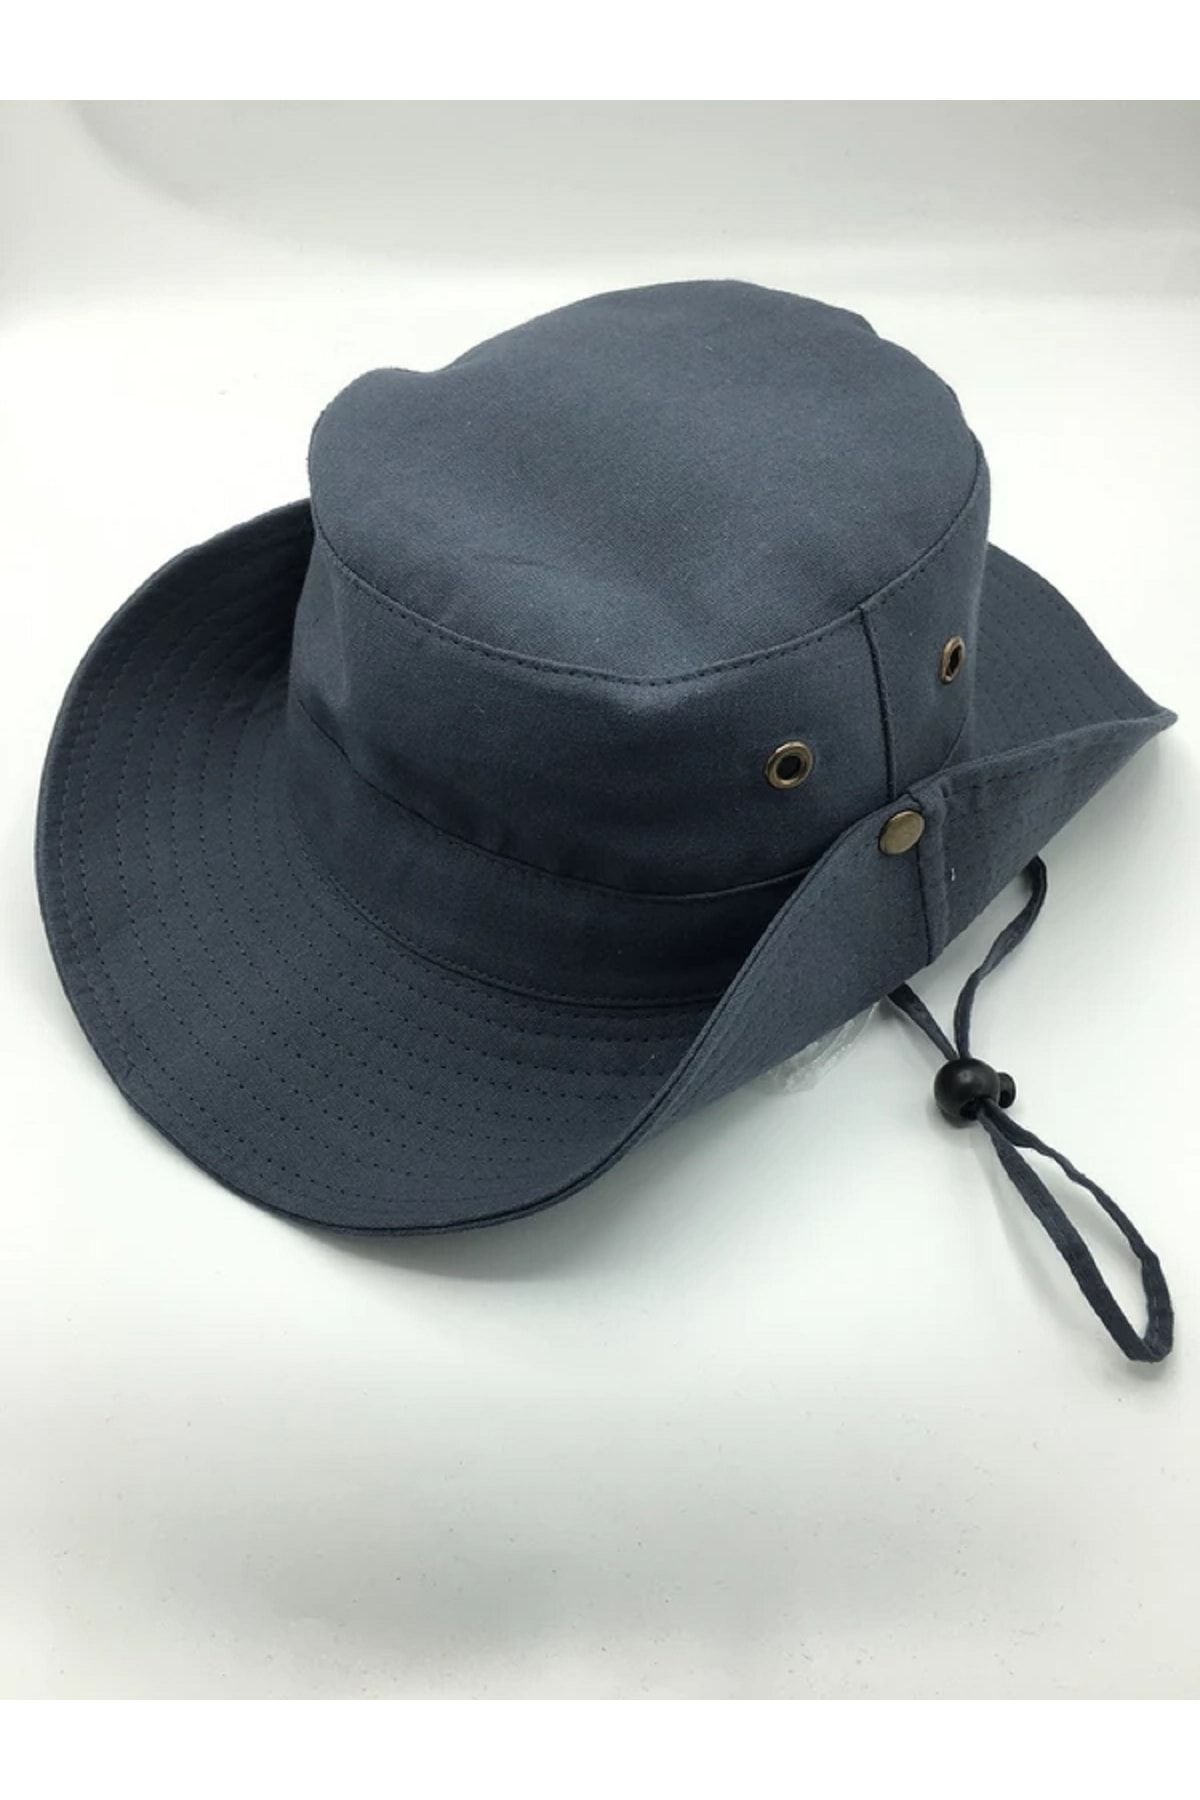 Premium ONLY Yazlık Unisex Safari Kovboy Plaj Şapkası Çıtçıtlı Katlanabilir Pamuklu 56-58 Cm Gri